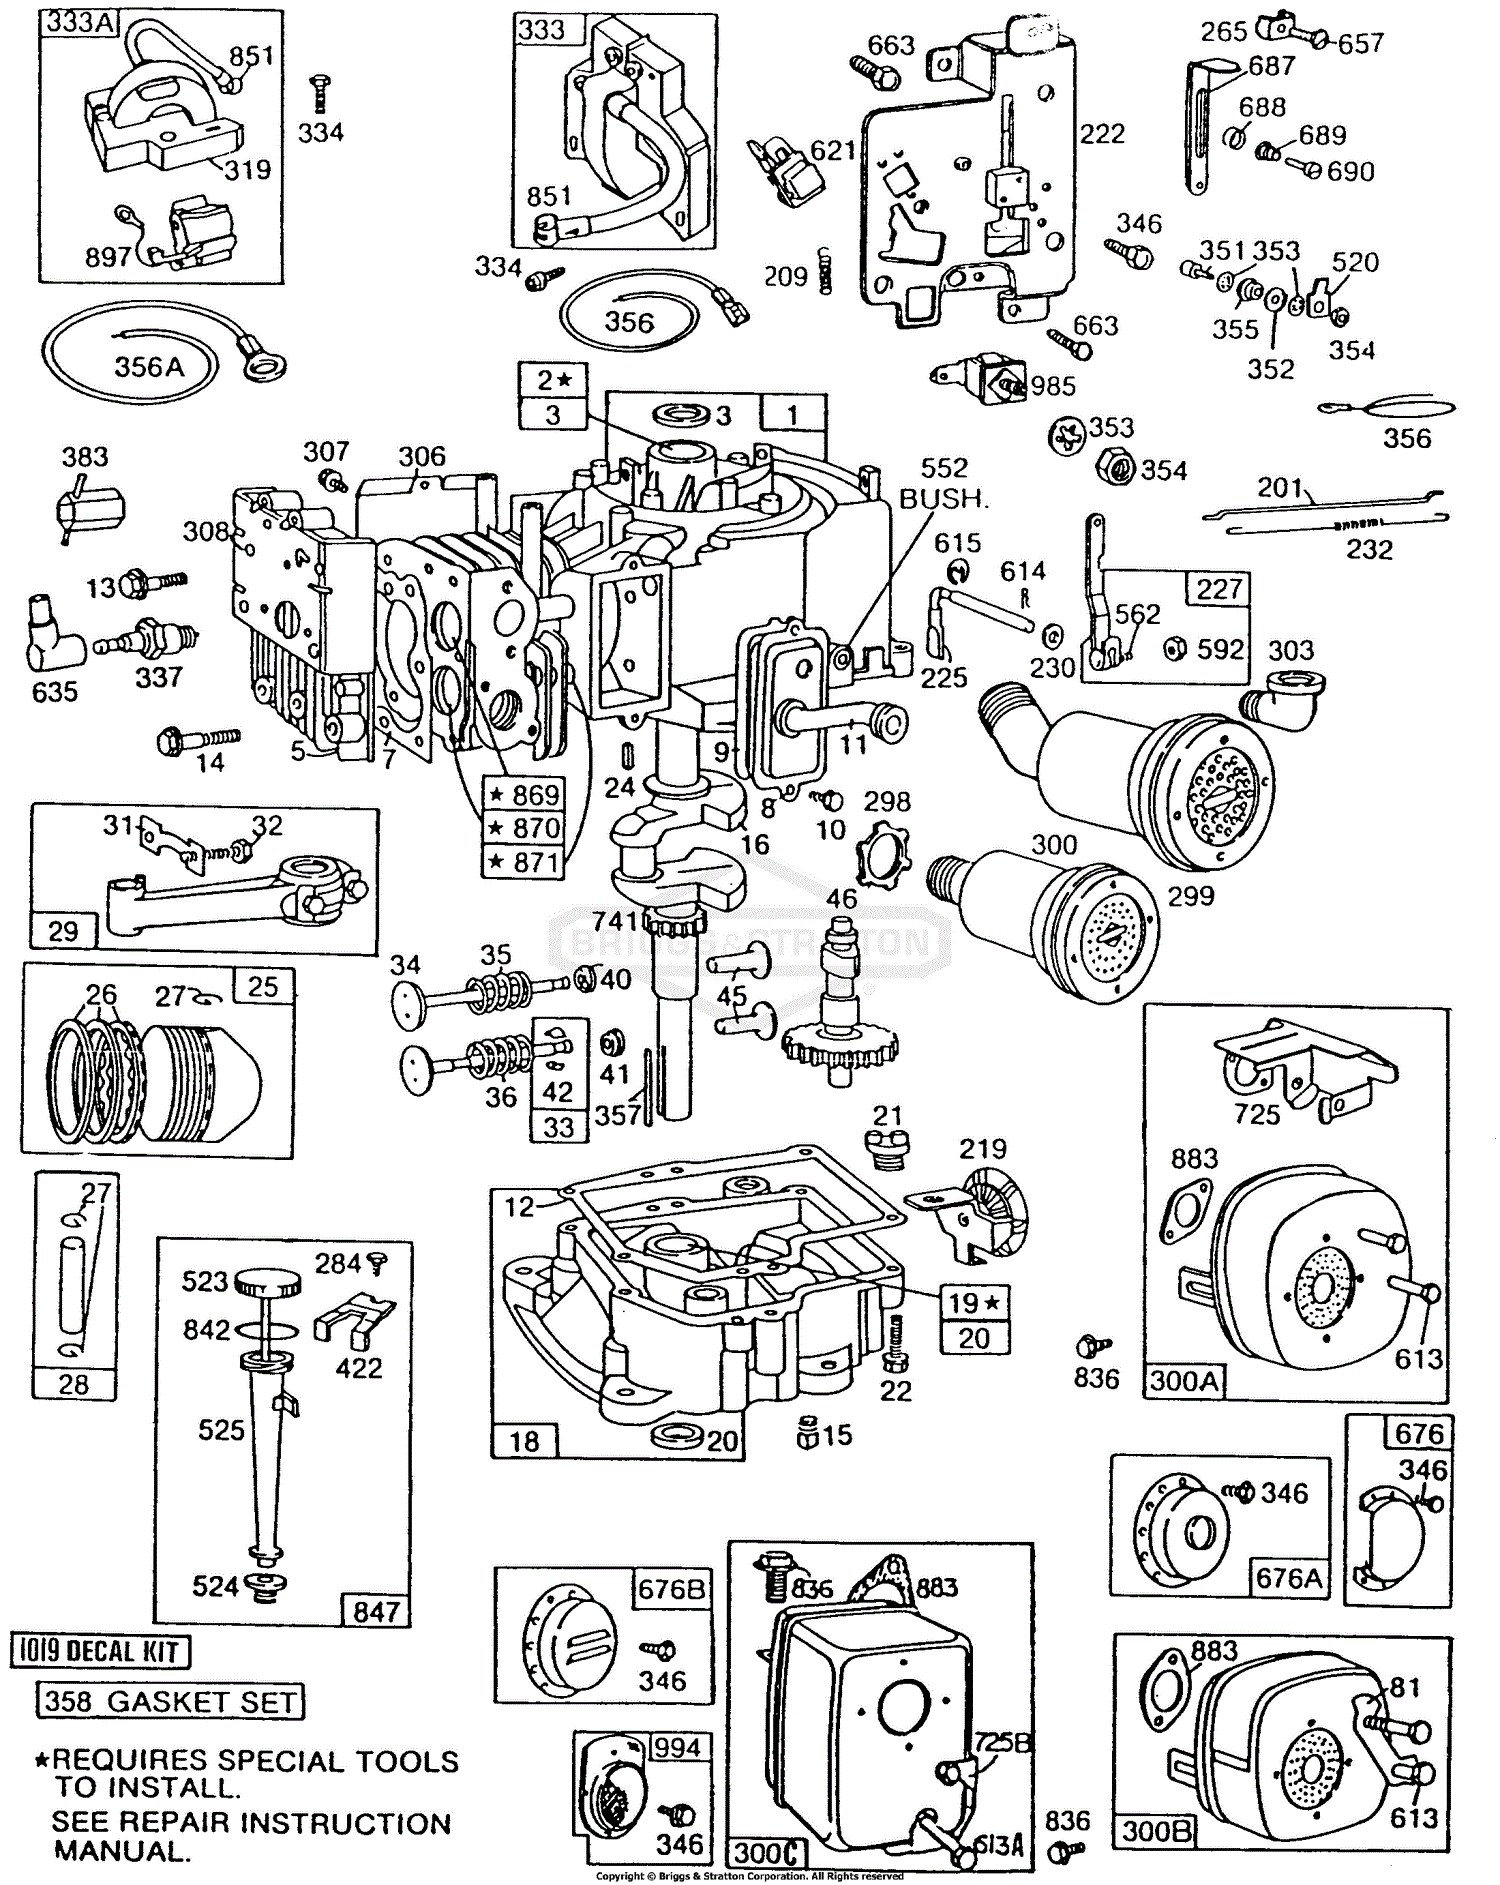 Briggs and Stratton Parts Diagrams Briggs and Stratton 2166 01 Parts Diagram for Cyl Sump Piston Oil Fill Of Briggs and Stratton Parts Diagrams